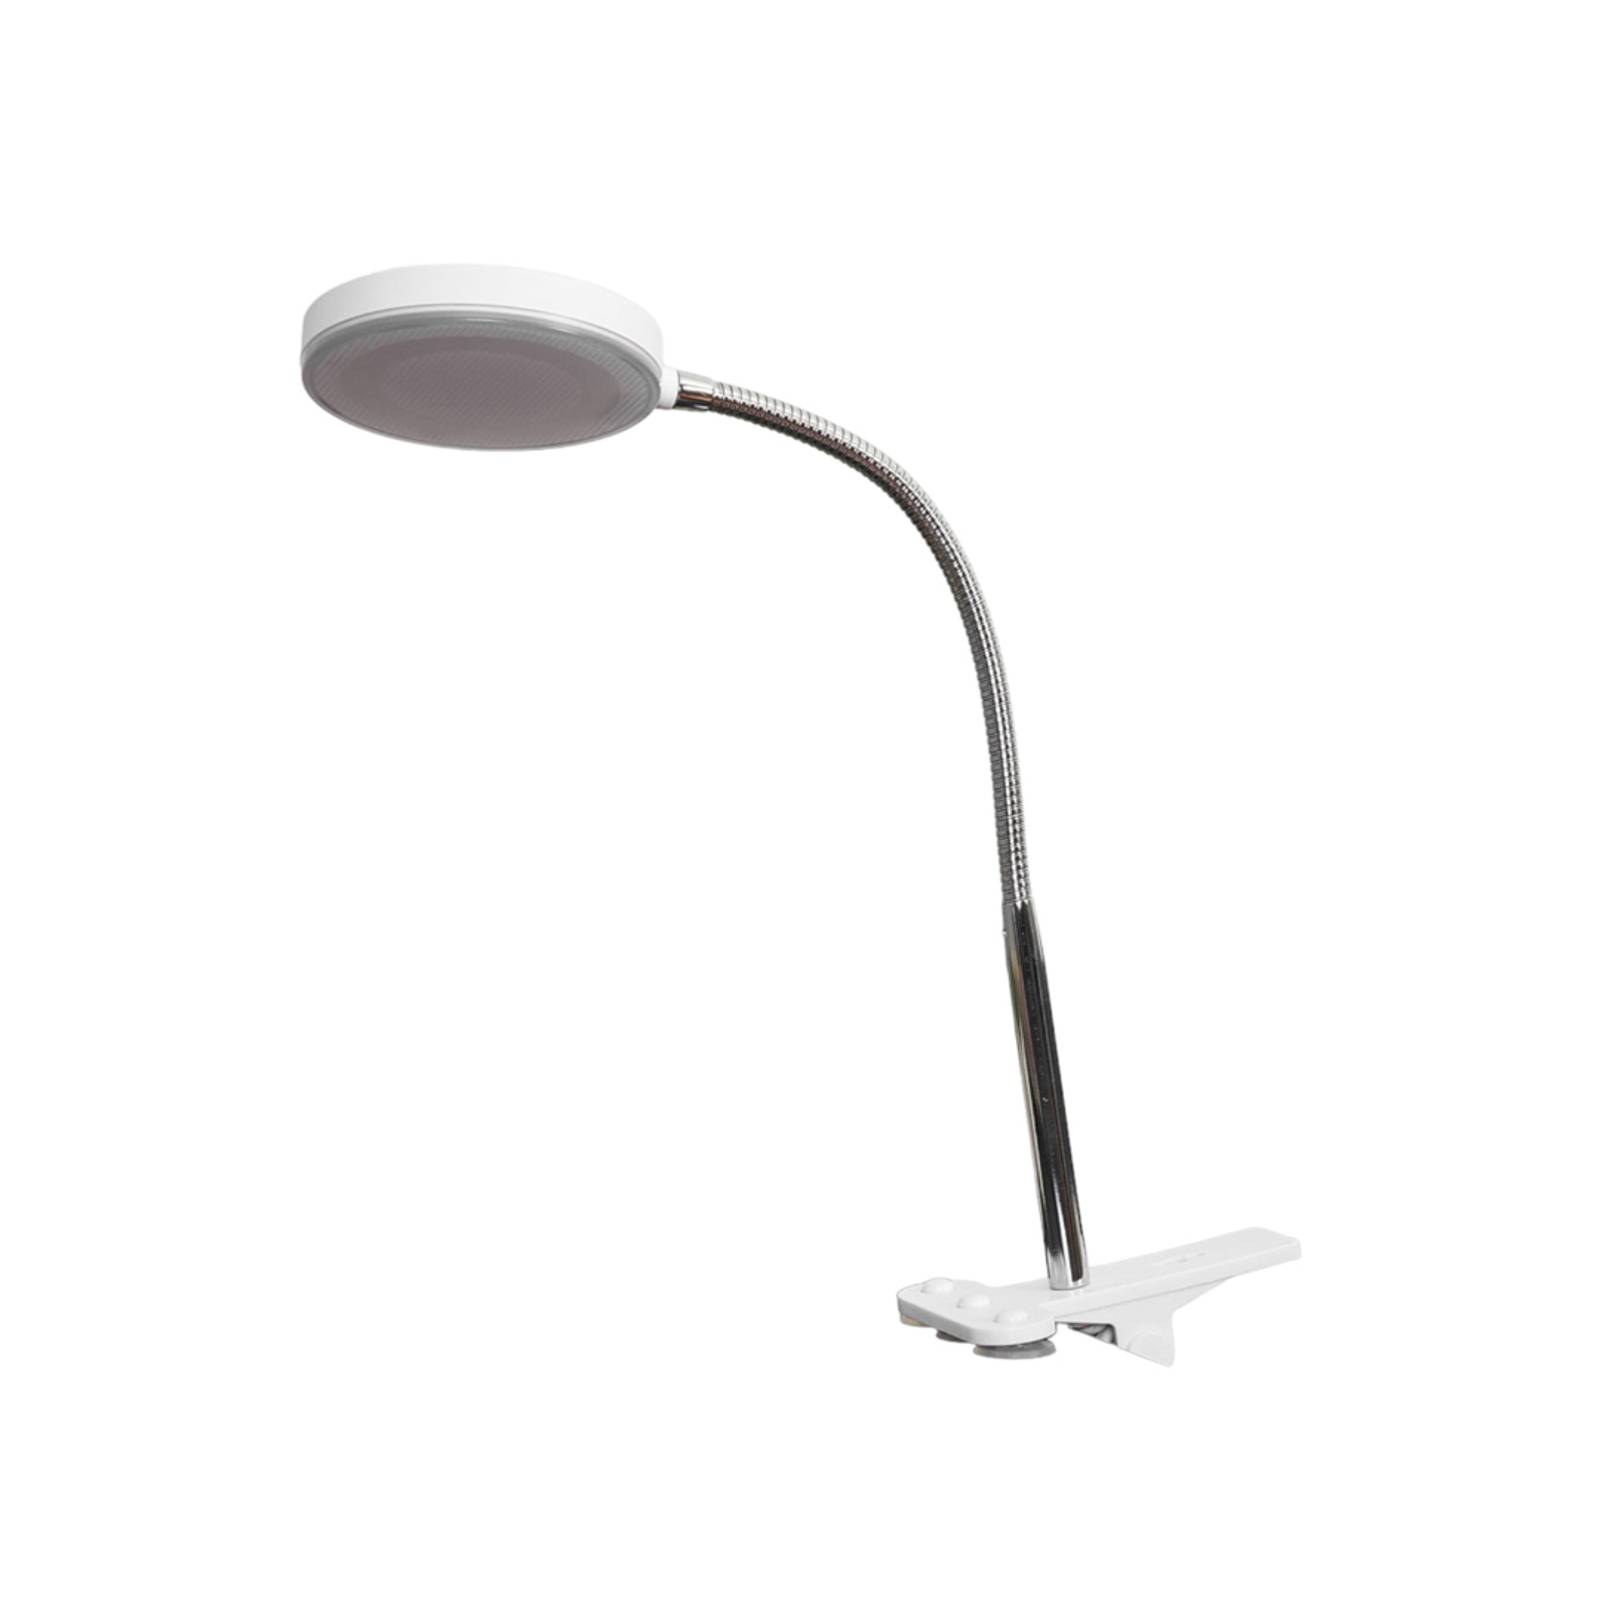 Klämbordslampa Milow med LED och flexarm